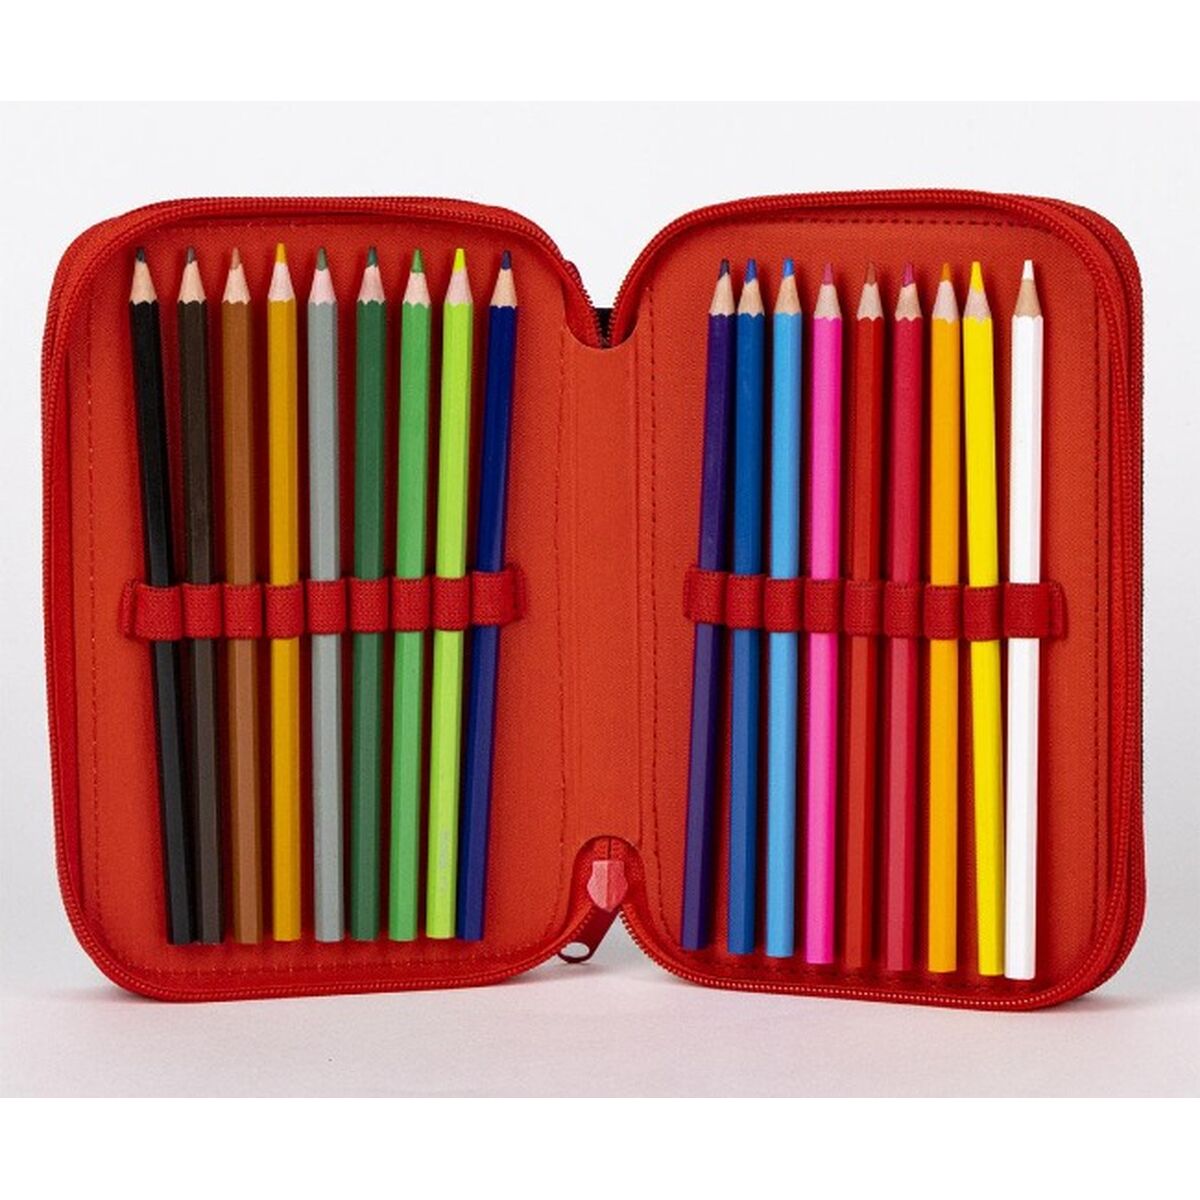 Triple Pencil Case The Avengers Red Black 13,5 x 7,5 x 20 cm-2